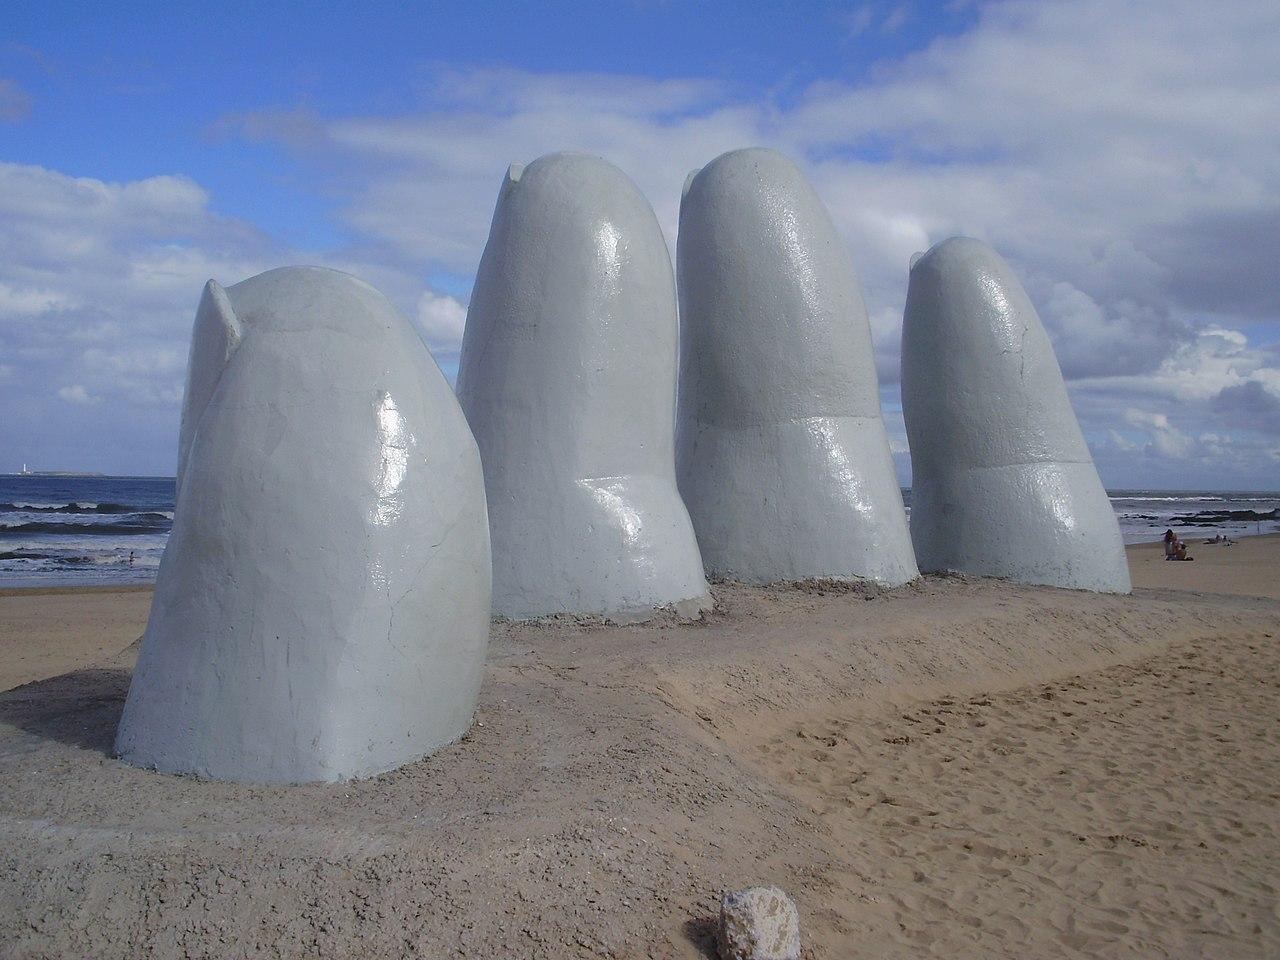 Punta del Este, Uruguay